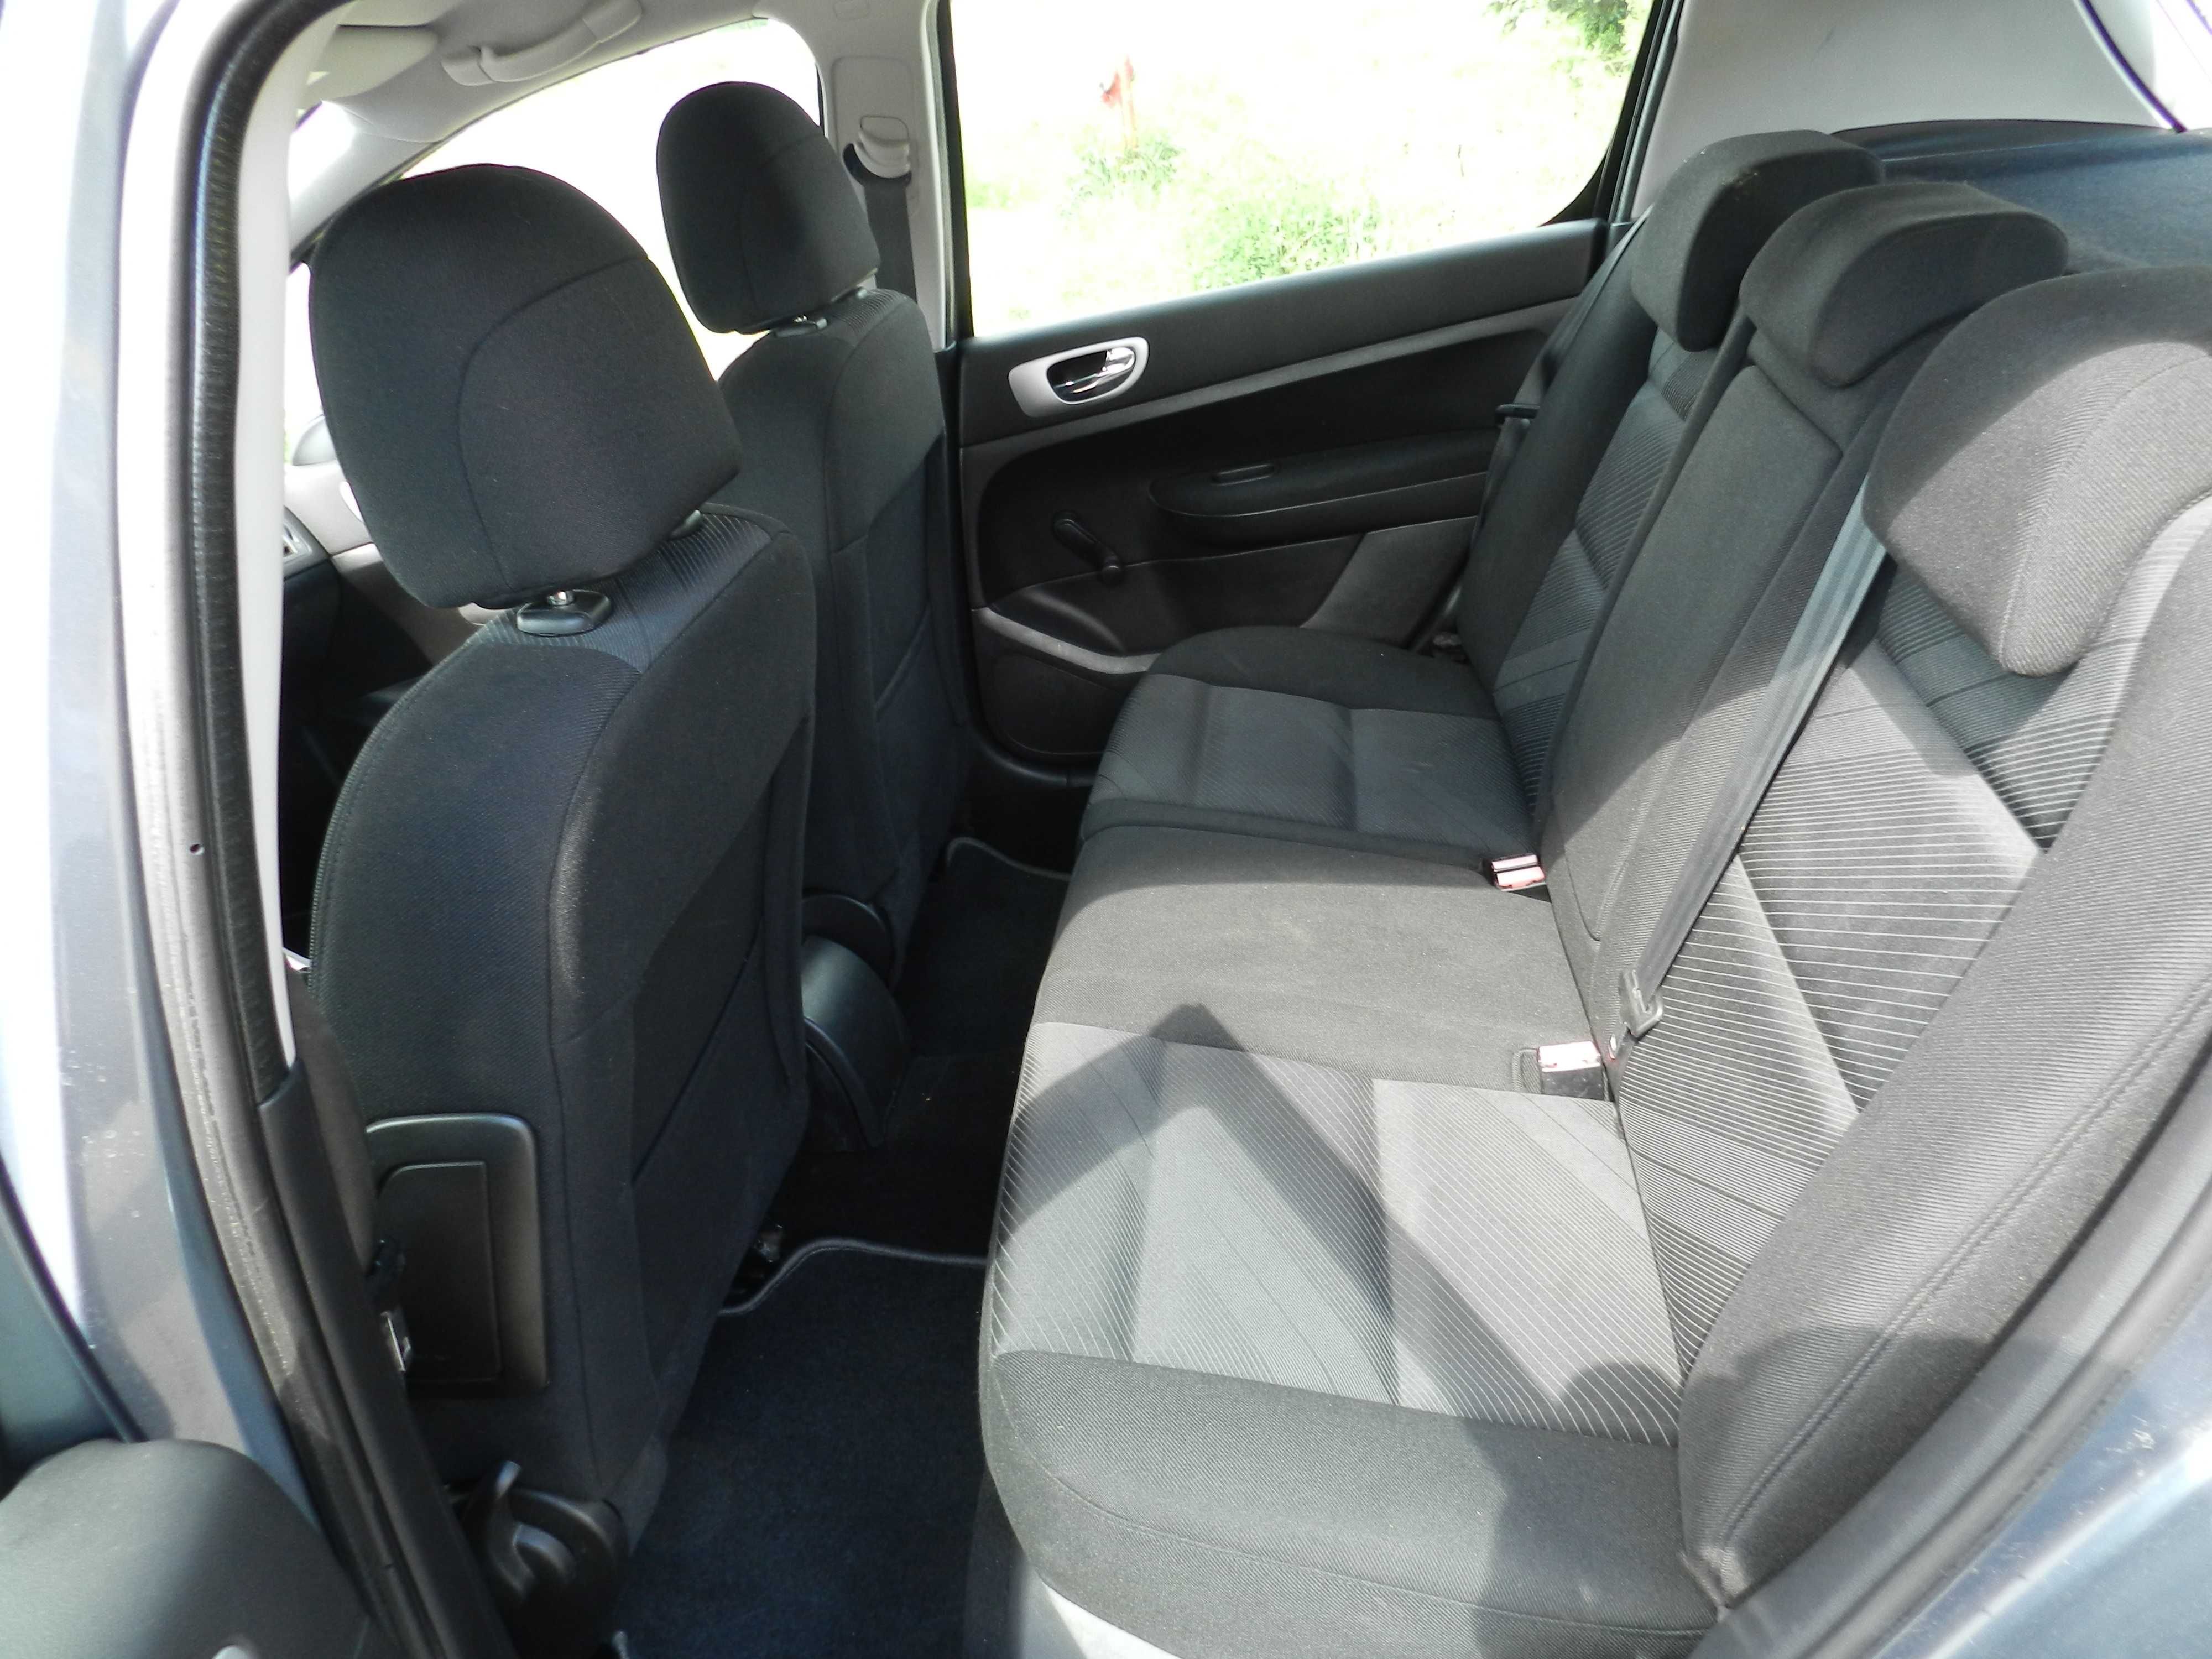 Peugeot 307 klima 1,6i 5 drzwi Zarejestrowany